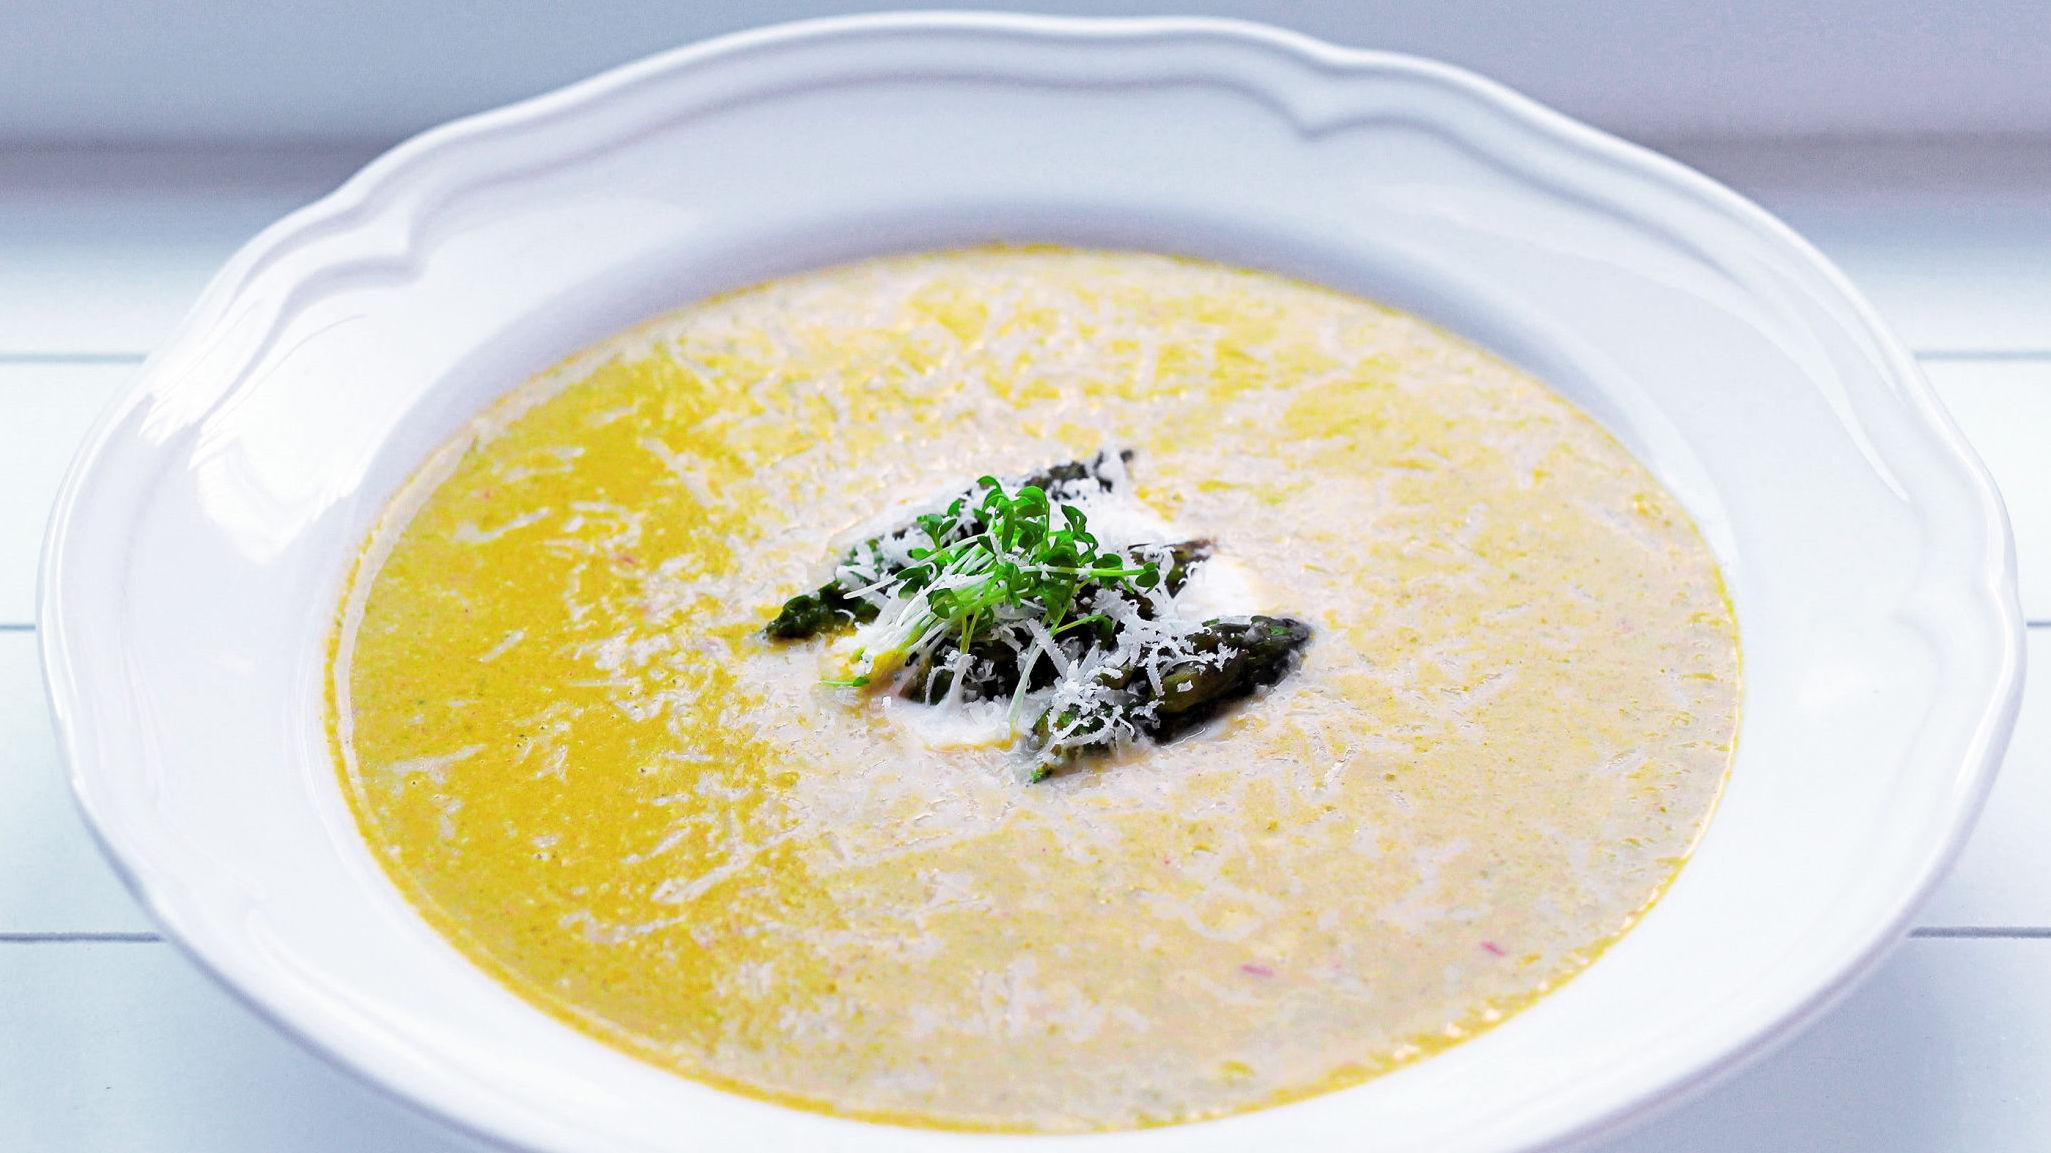 VARMENDE: Jordskokk gir veldig god smak i suppe, og med chili kjenner du den brenne litt også. Foto: Kristina Uldahl